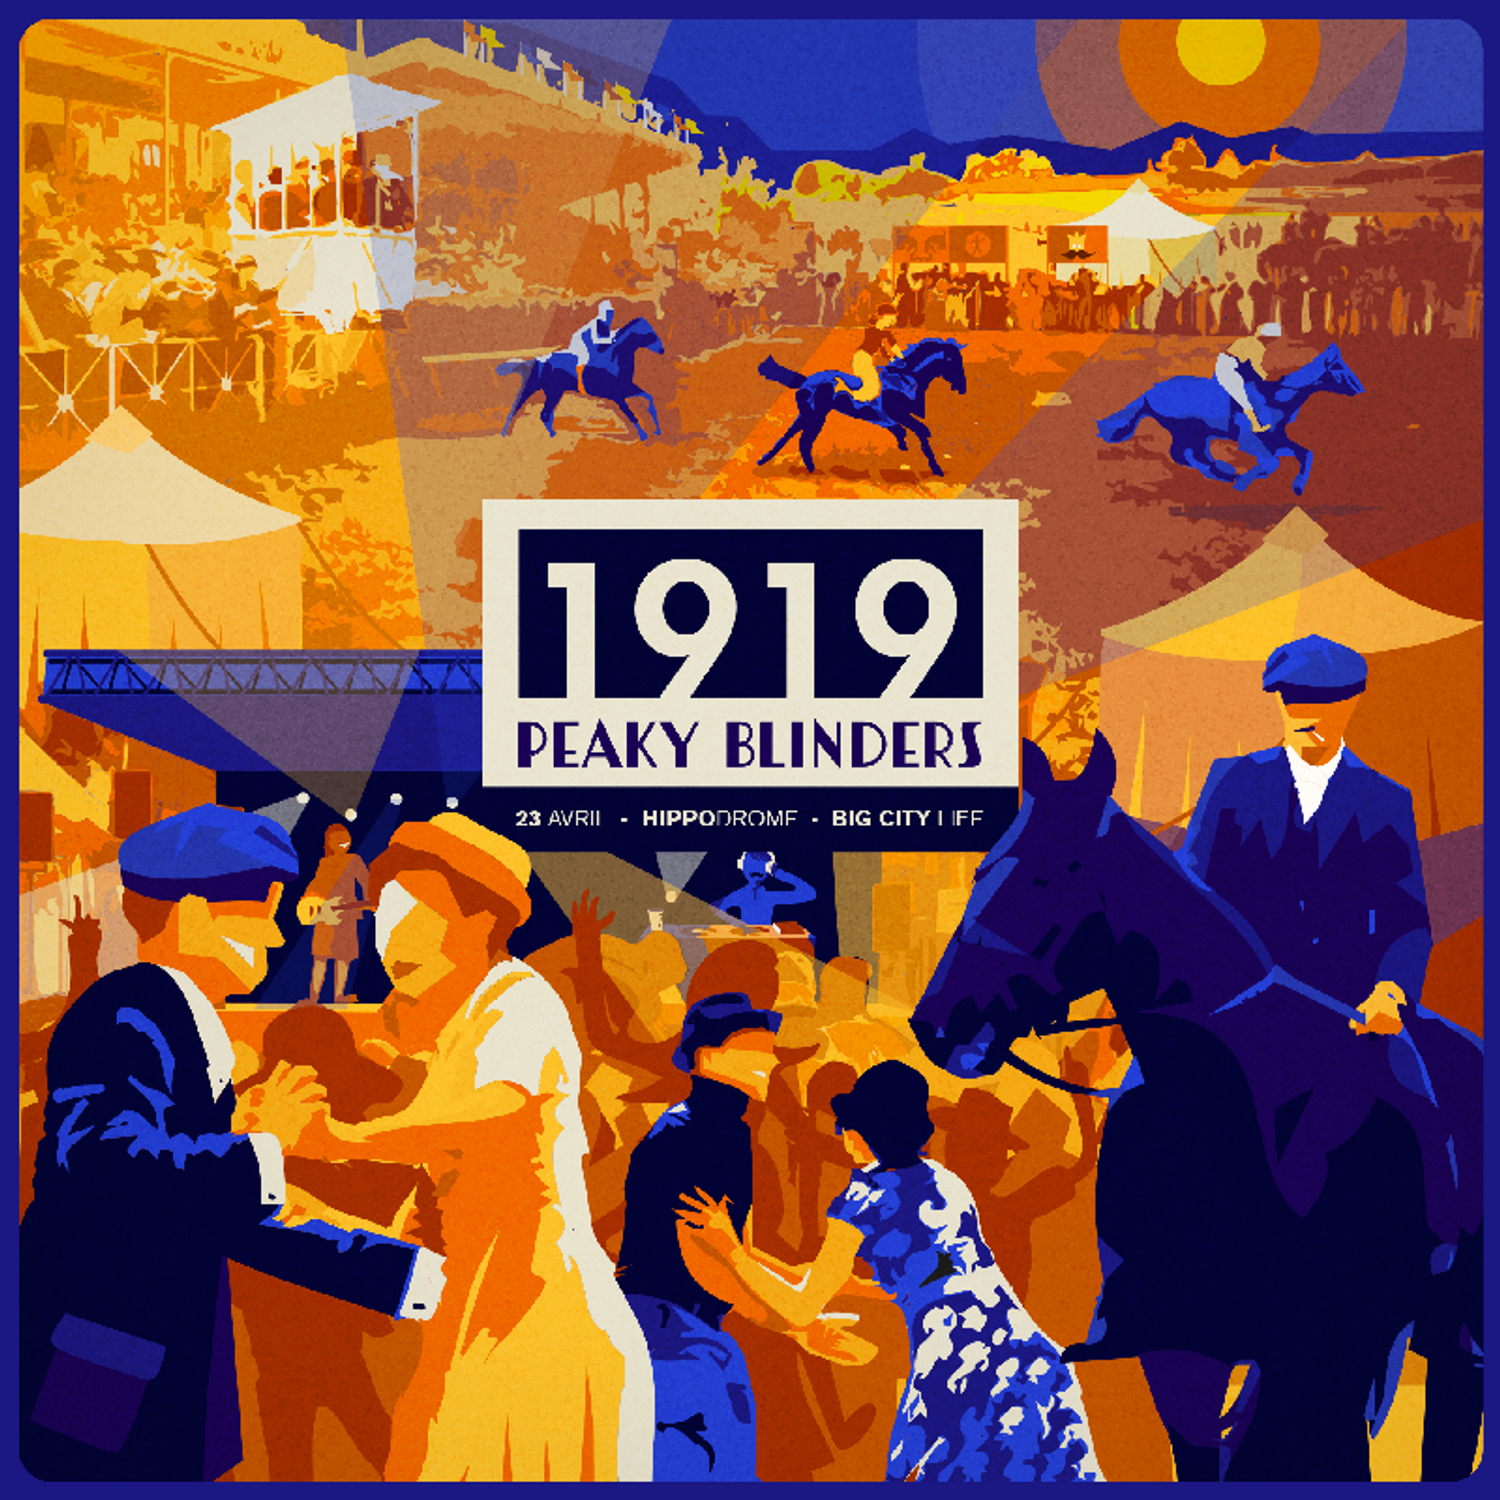 1919 Peaky Blinders Nantes